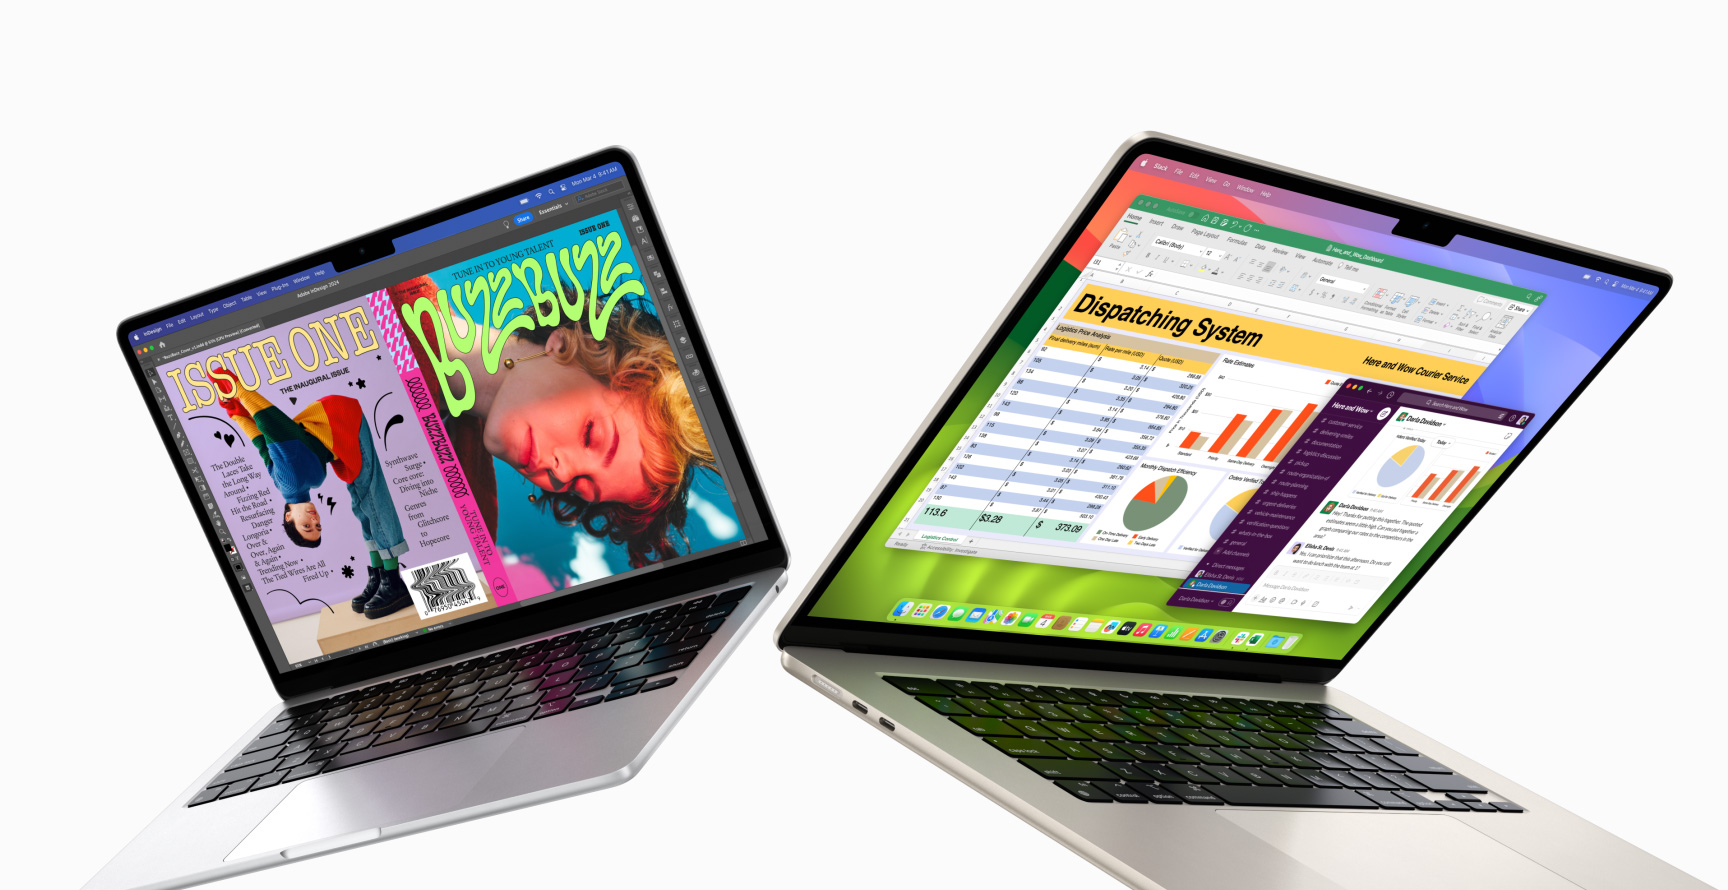 MacBook Air de 13 inchi parțial deschis pe partea stângă și MacBook Air de 15 inchi parțial deschis pe partea dreaptă. Ecranul de 13 inchi afișează o copertă zine plină de culoare, creată cu In Design. Ecranul de 15 inchi afișează Microsoft Excel și Slack.